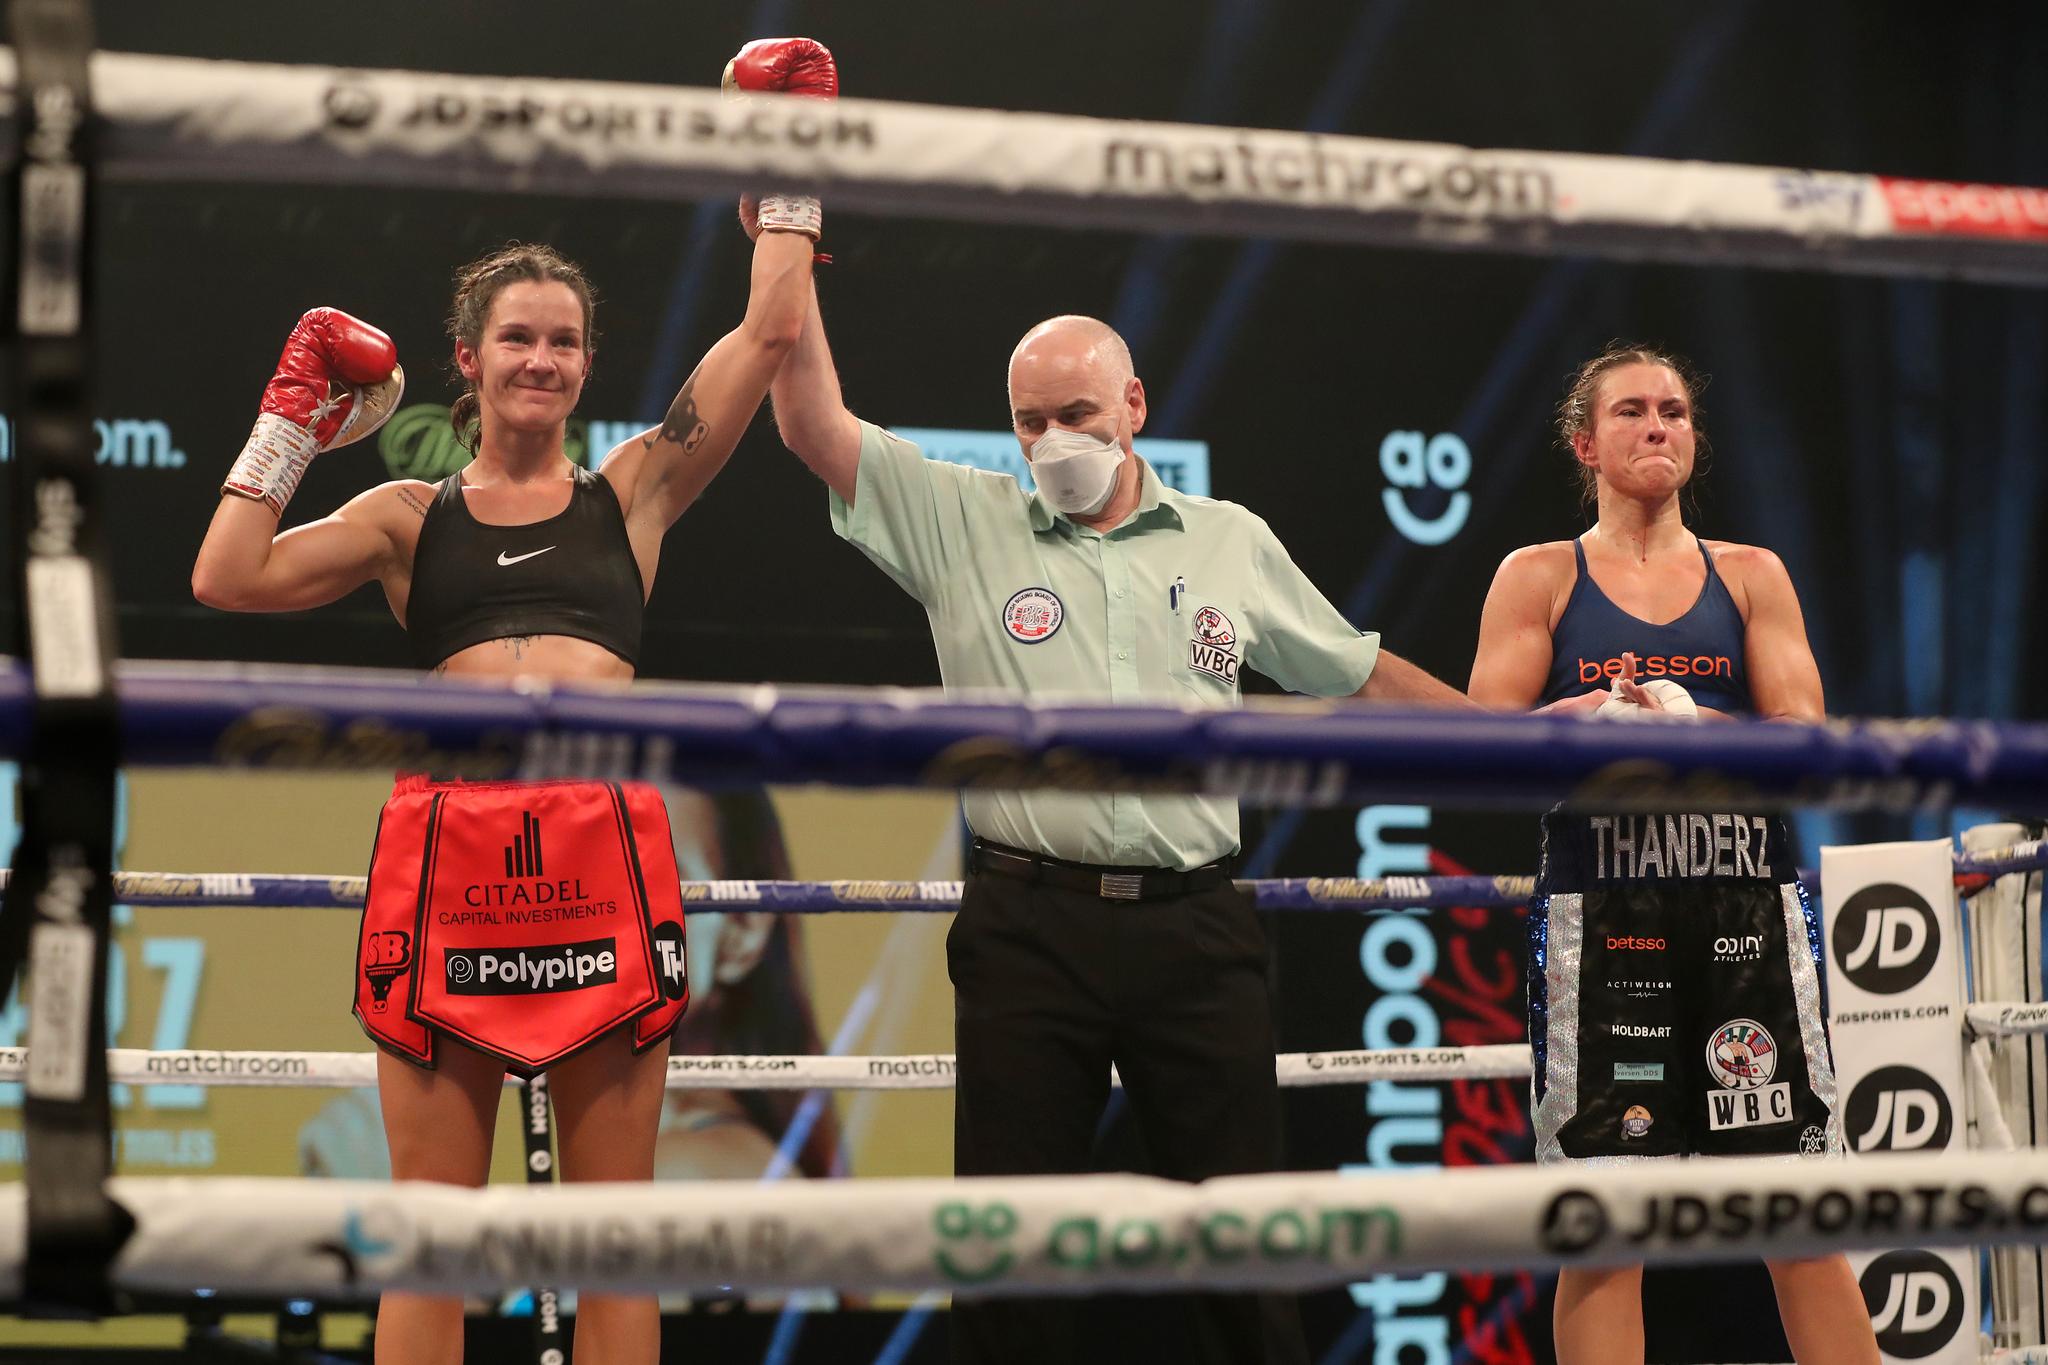 BEHOLDT BELTENE: Terri Harper kåres til vinner på teknisk knockout av ringdommer Victor Loughlin. Katharina Engene Thanderz (t.h.) mener hun burde fått fullføre kampen. 